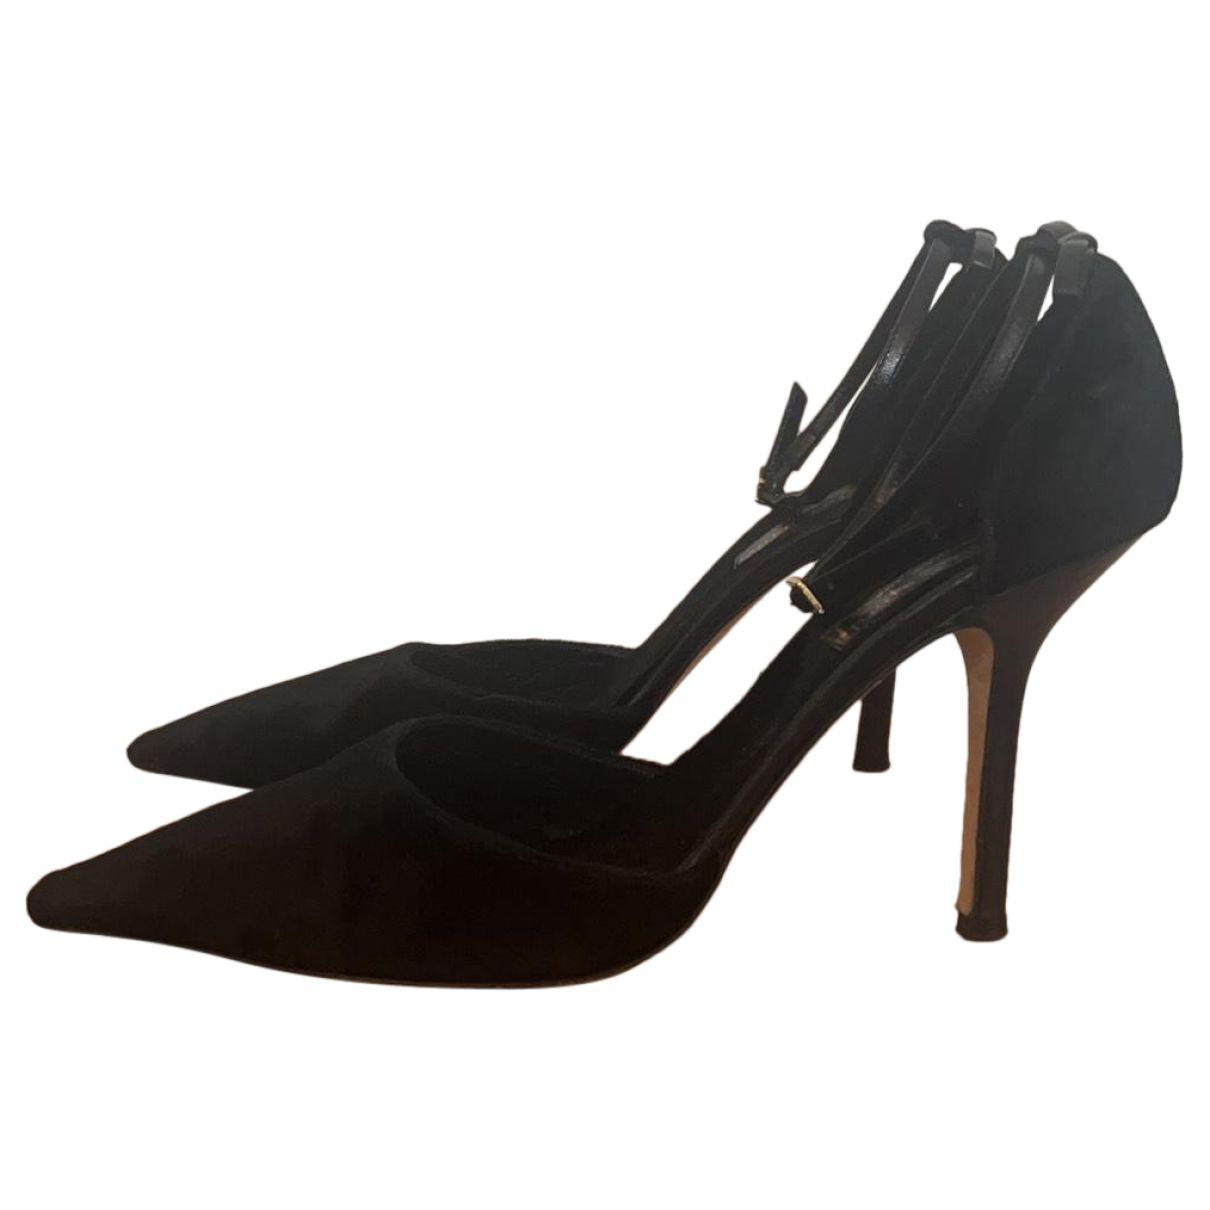 Velvet heels by KATE SPADE NEW YORK